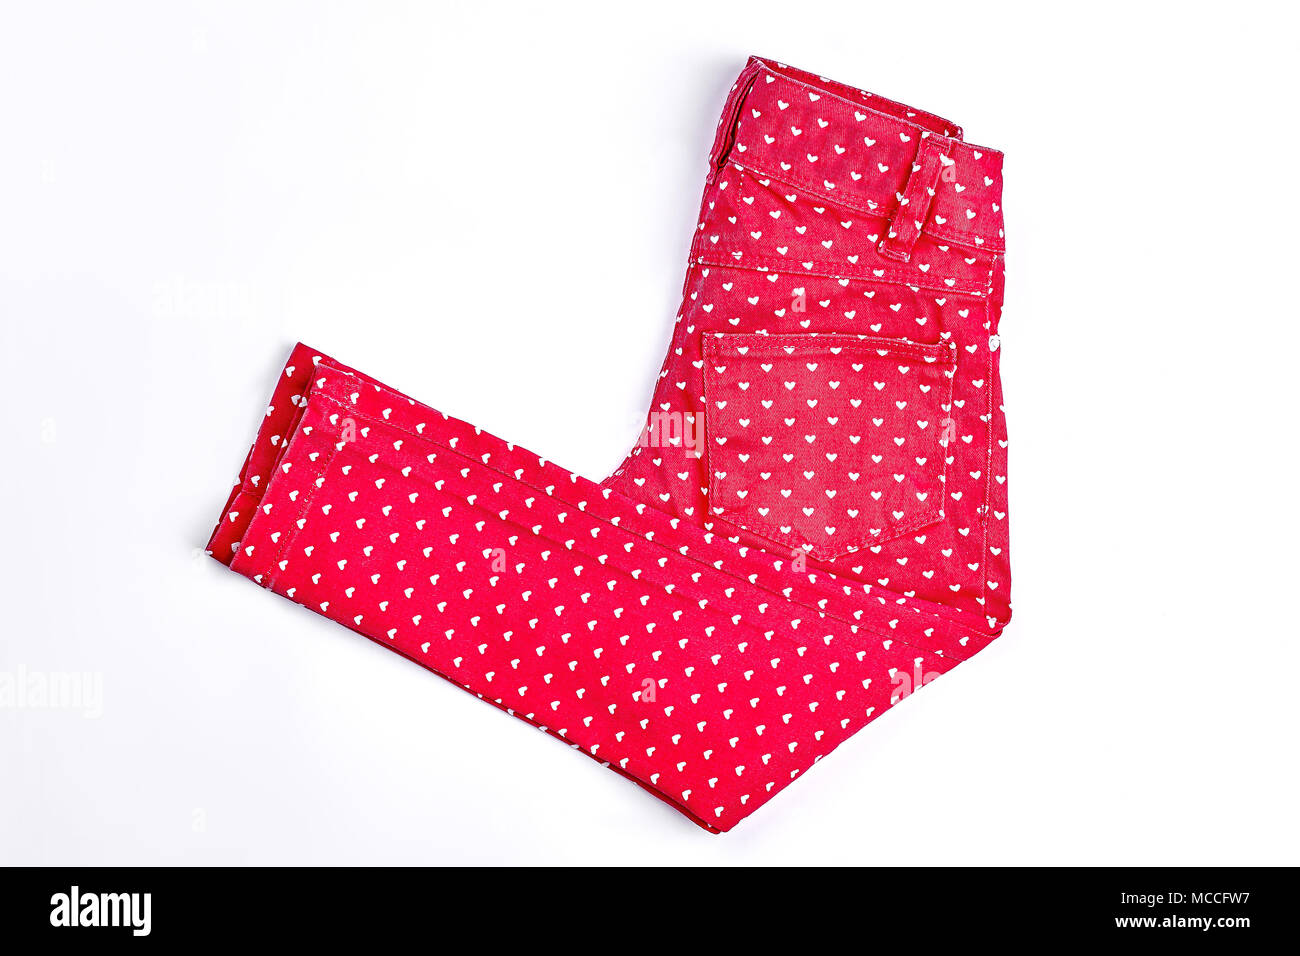 Mädchen neue rot gemusterte Jeans. Rot gedruckt aus Baumwolle Hosen für  Kinder auf weißem Hintergrund. Kinder mode Outfit Stockfotografie - Alamy